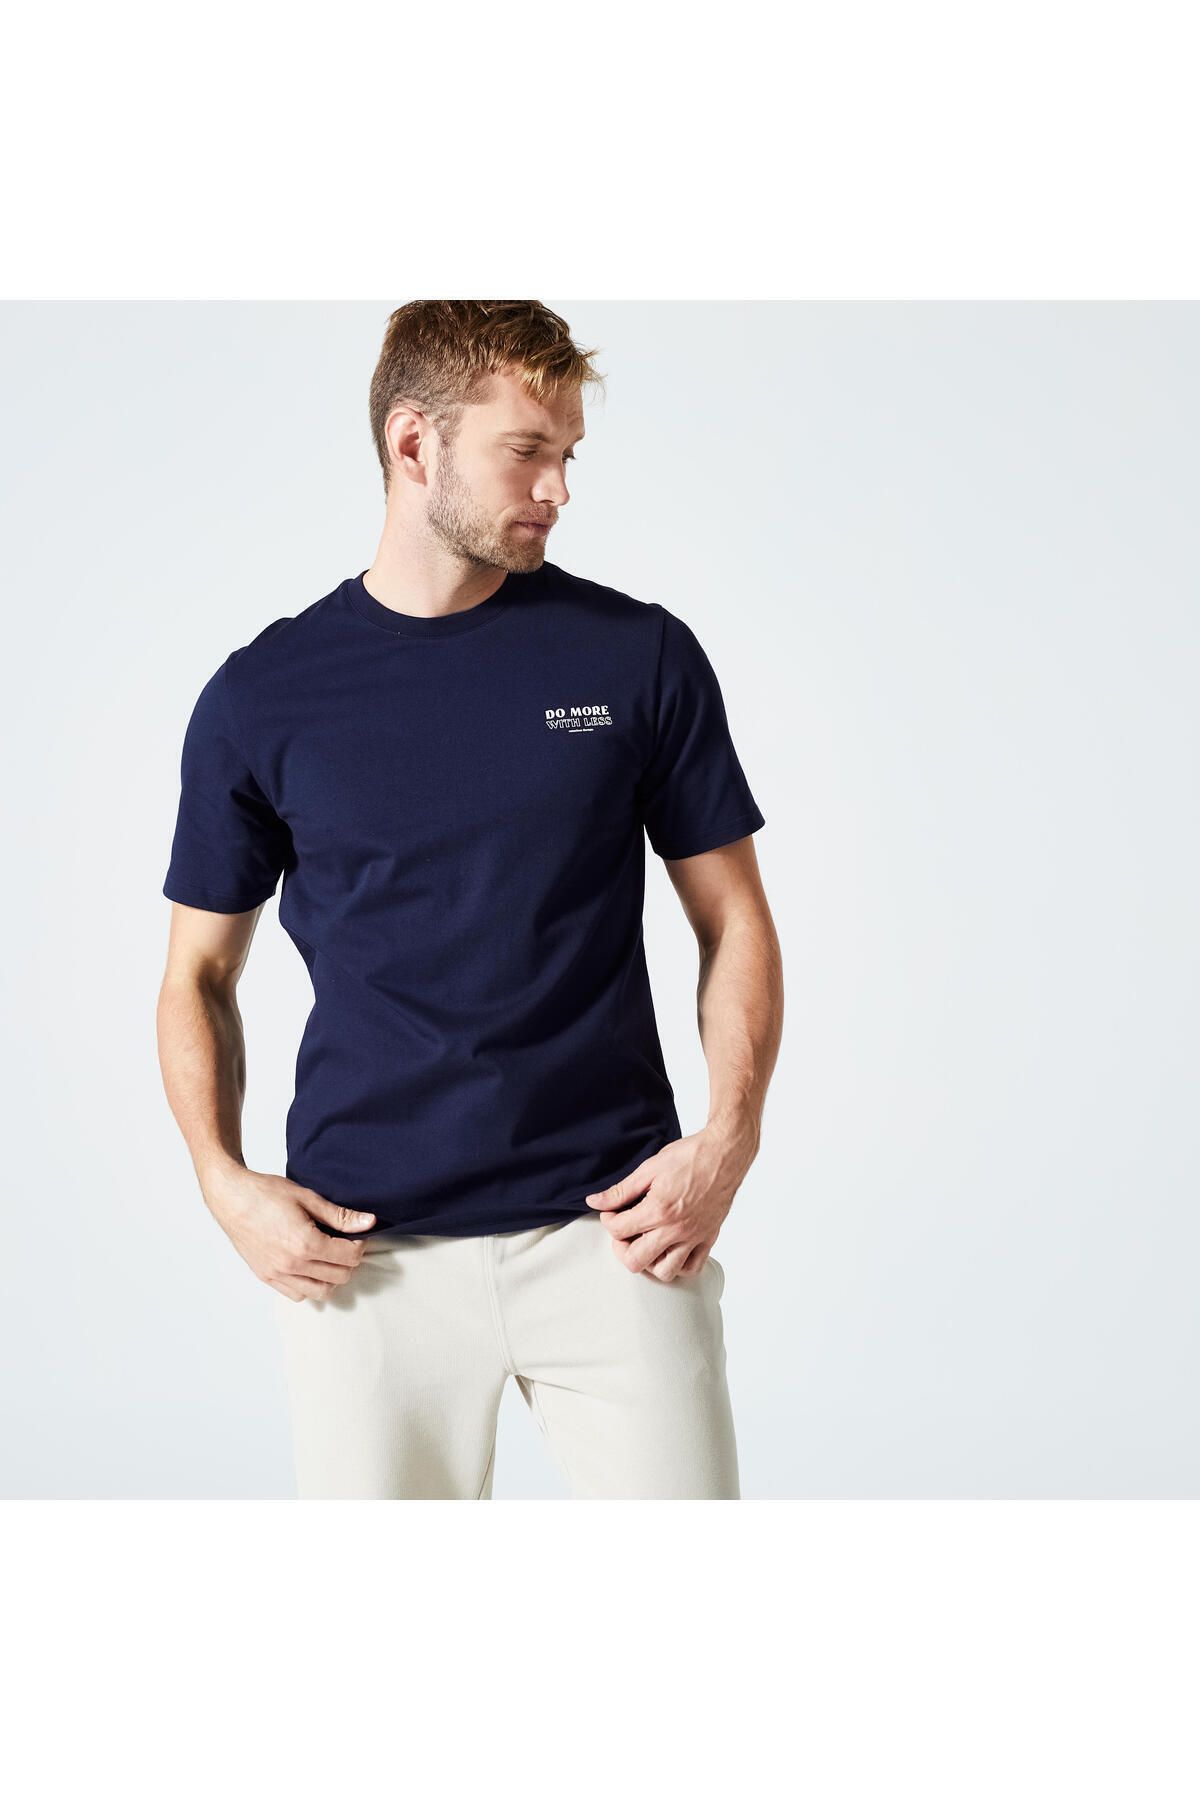 Decathlon Domyos Erkek Baskılı / Koyu Mavi Regular Spor Tişörtü 500 Essentials - Fitness